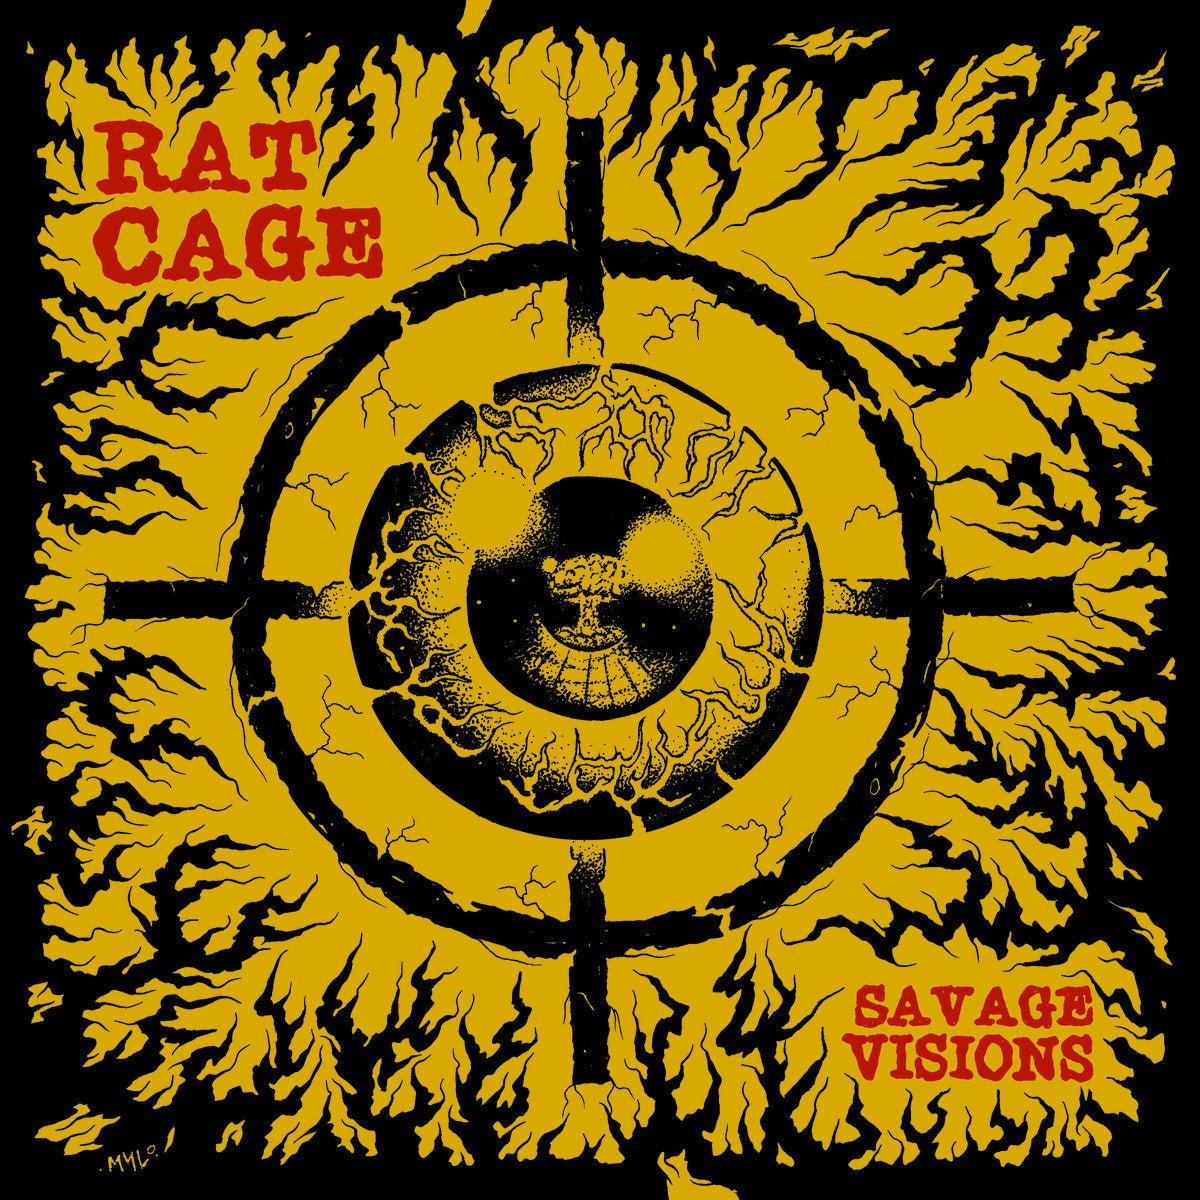 Rat Cage - Savage Visions LP - Vinyl - La Vida Es Un Mus